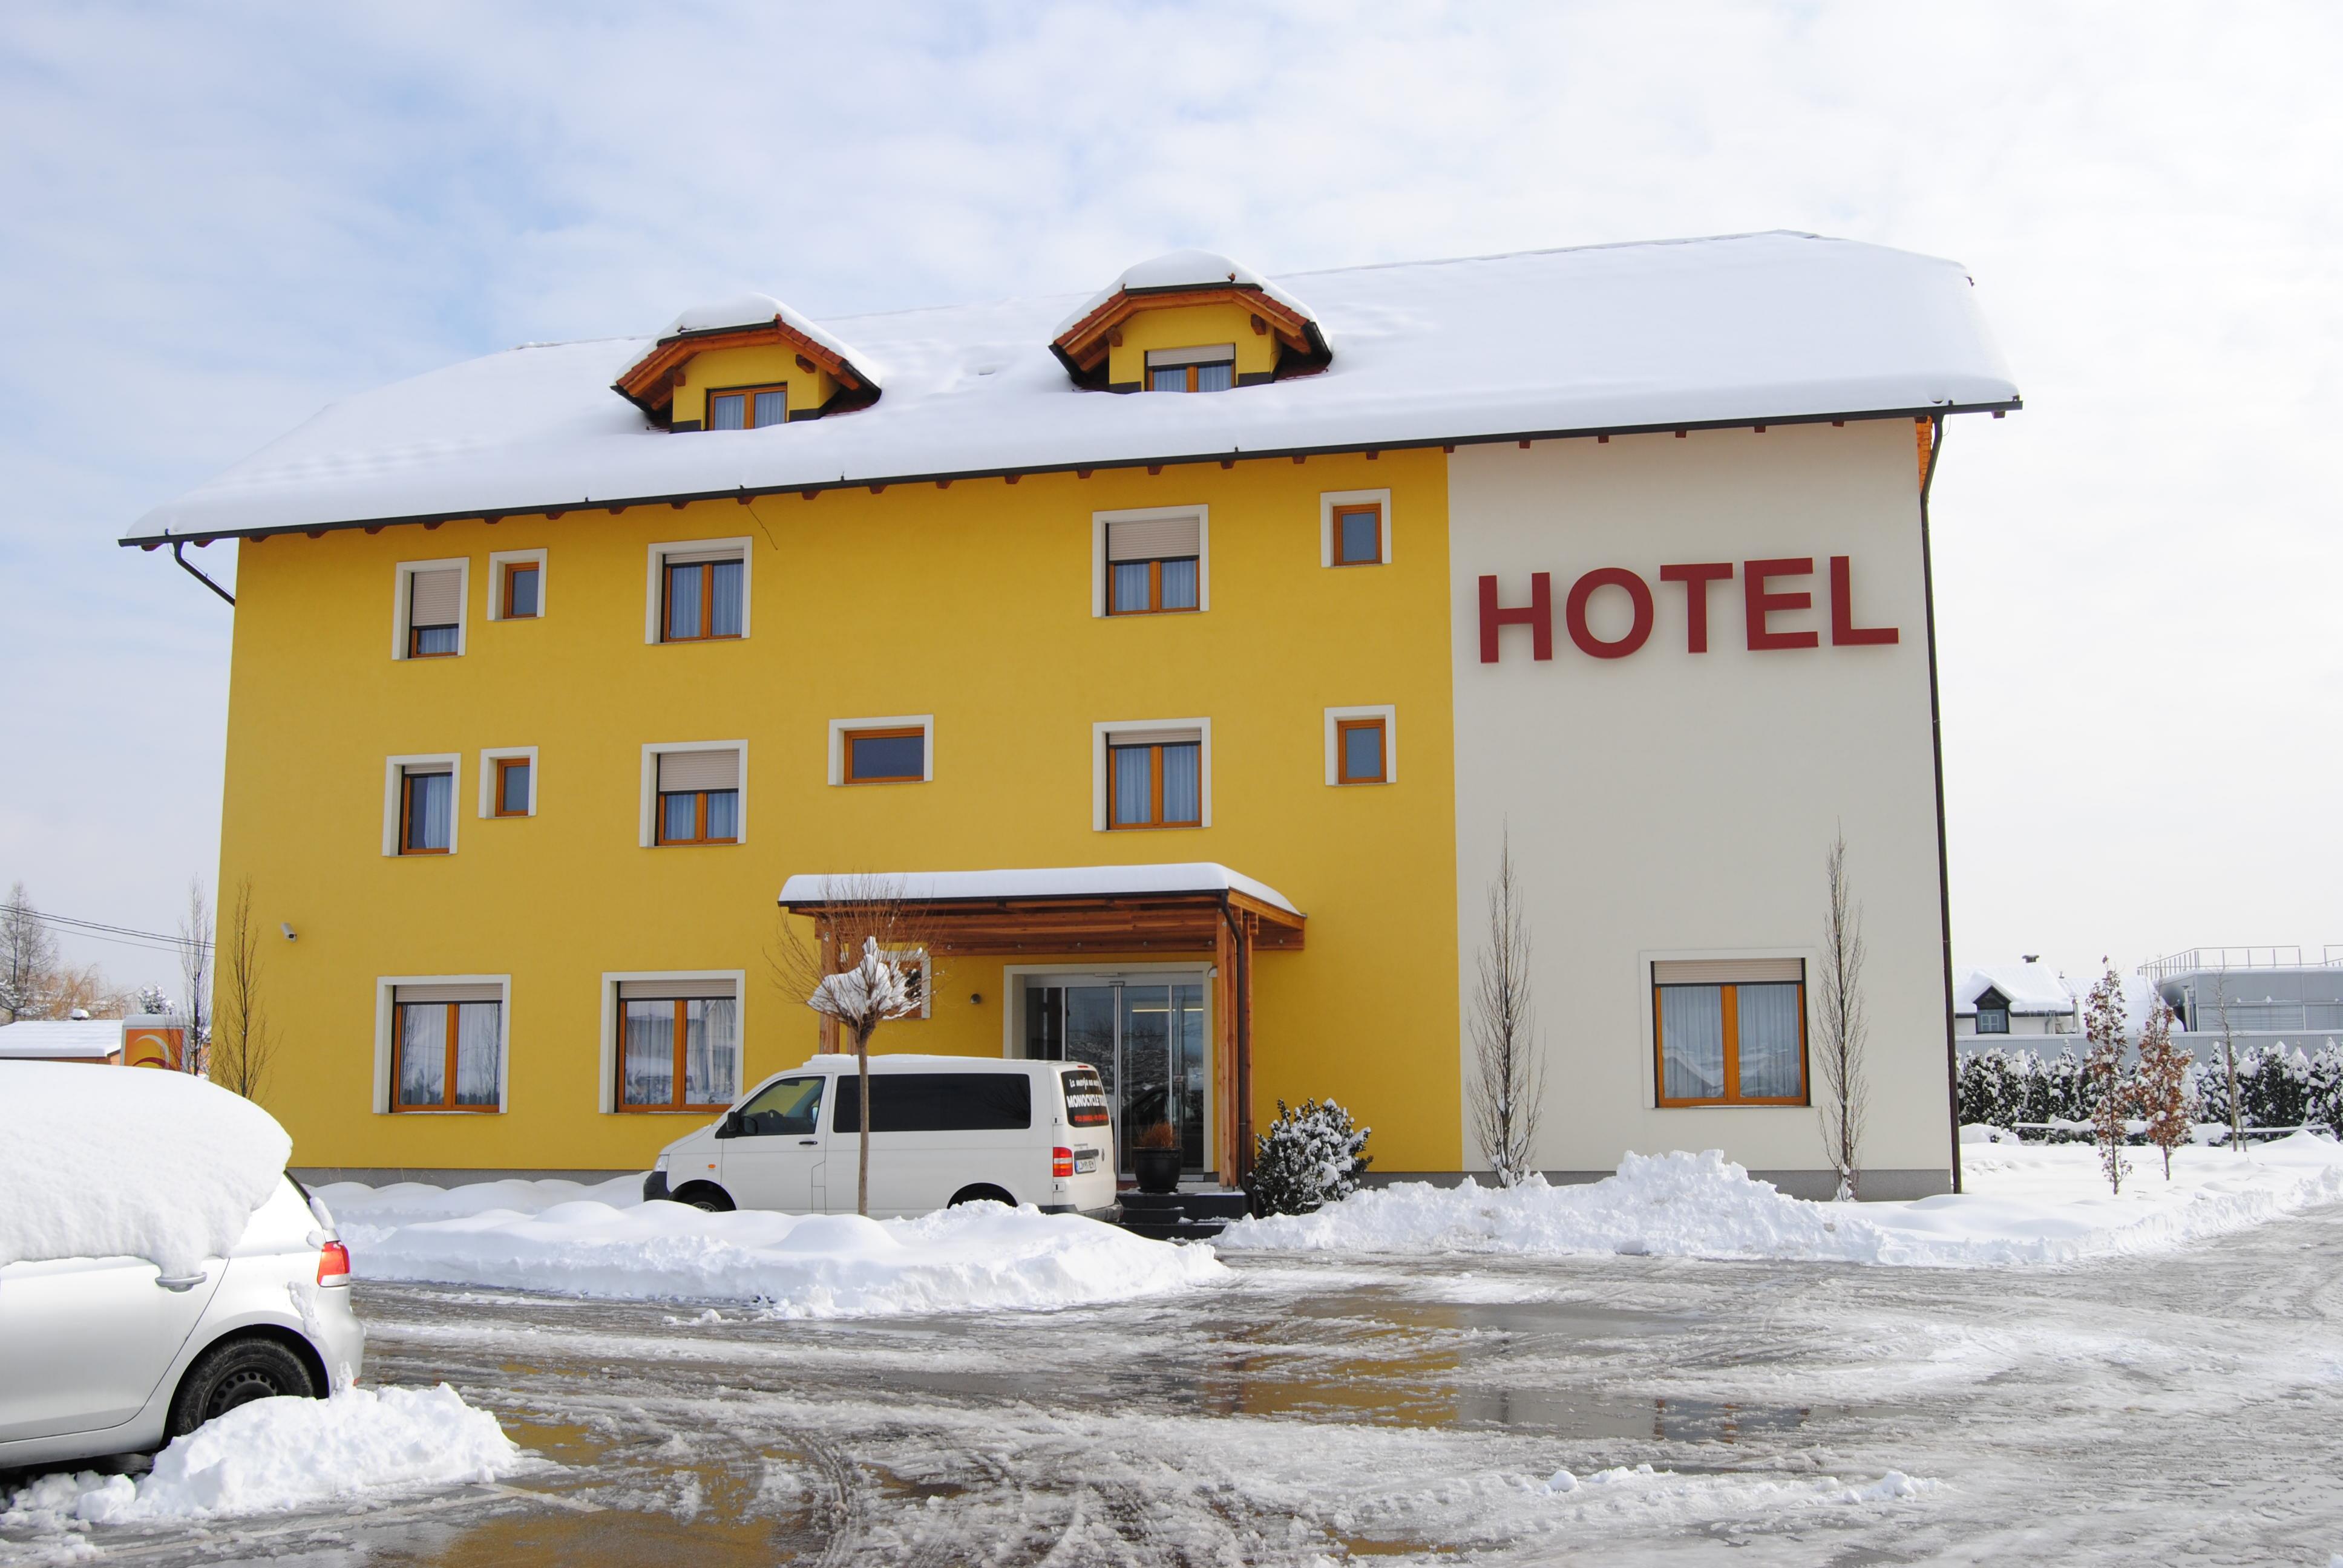 Hotel Bau****